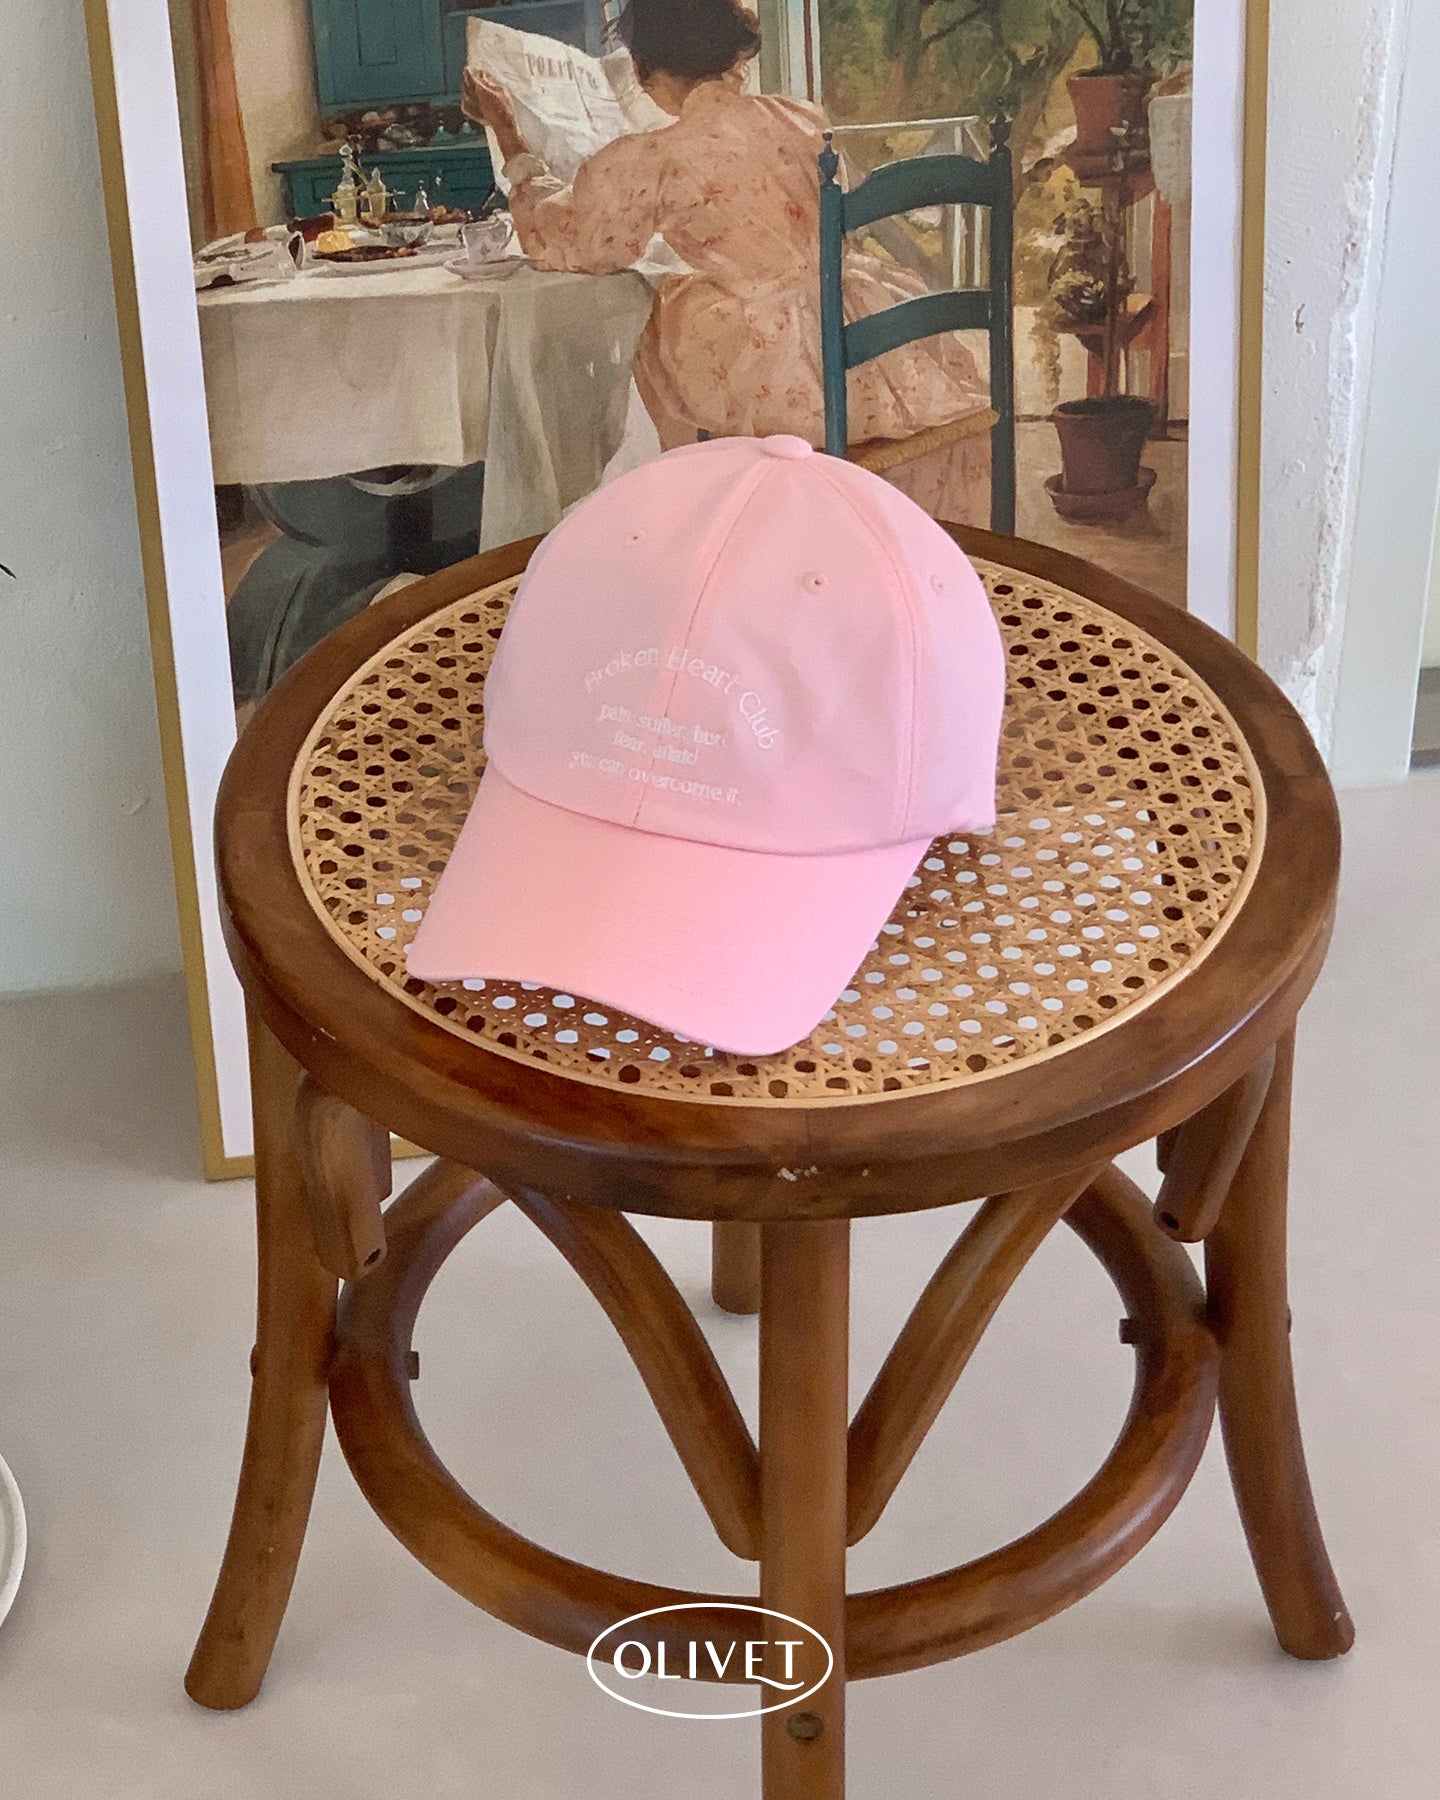 broken heart club ball cap (pink)